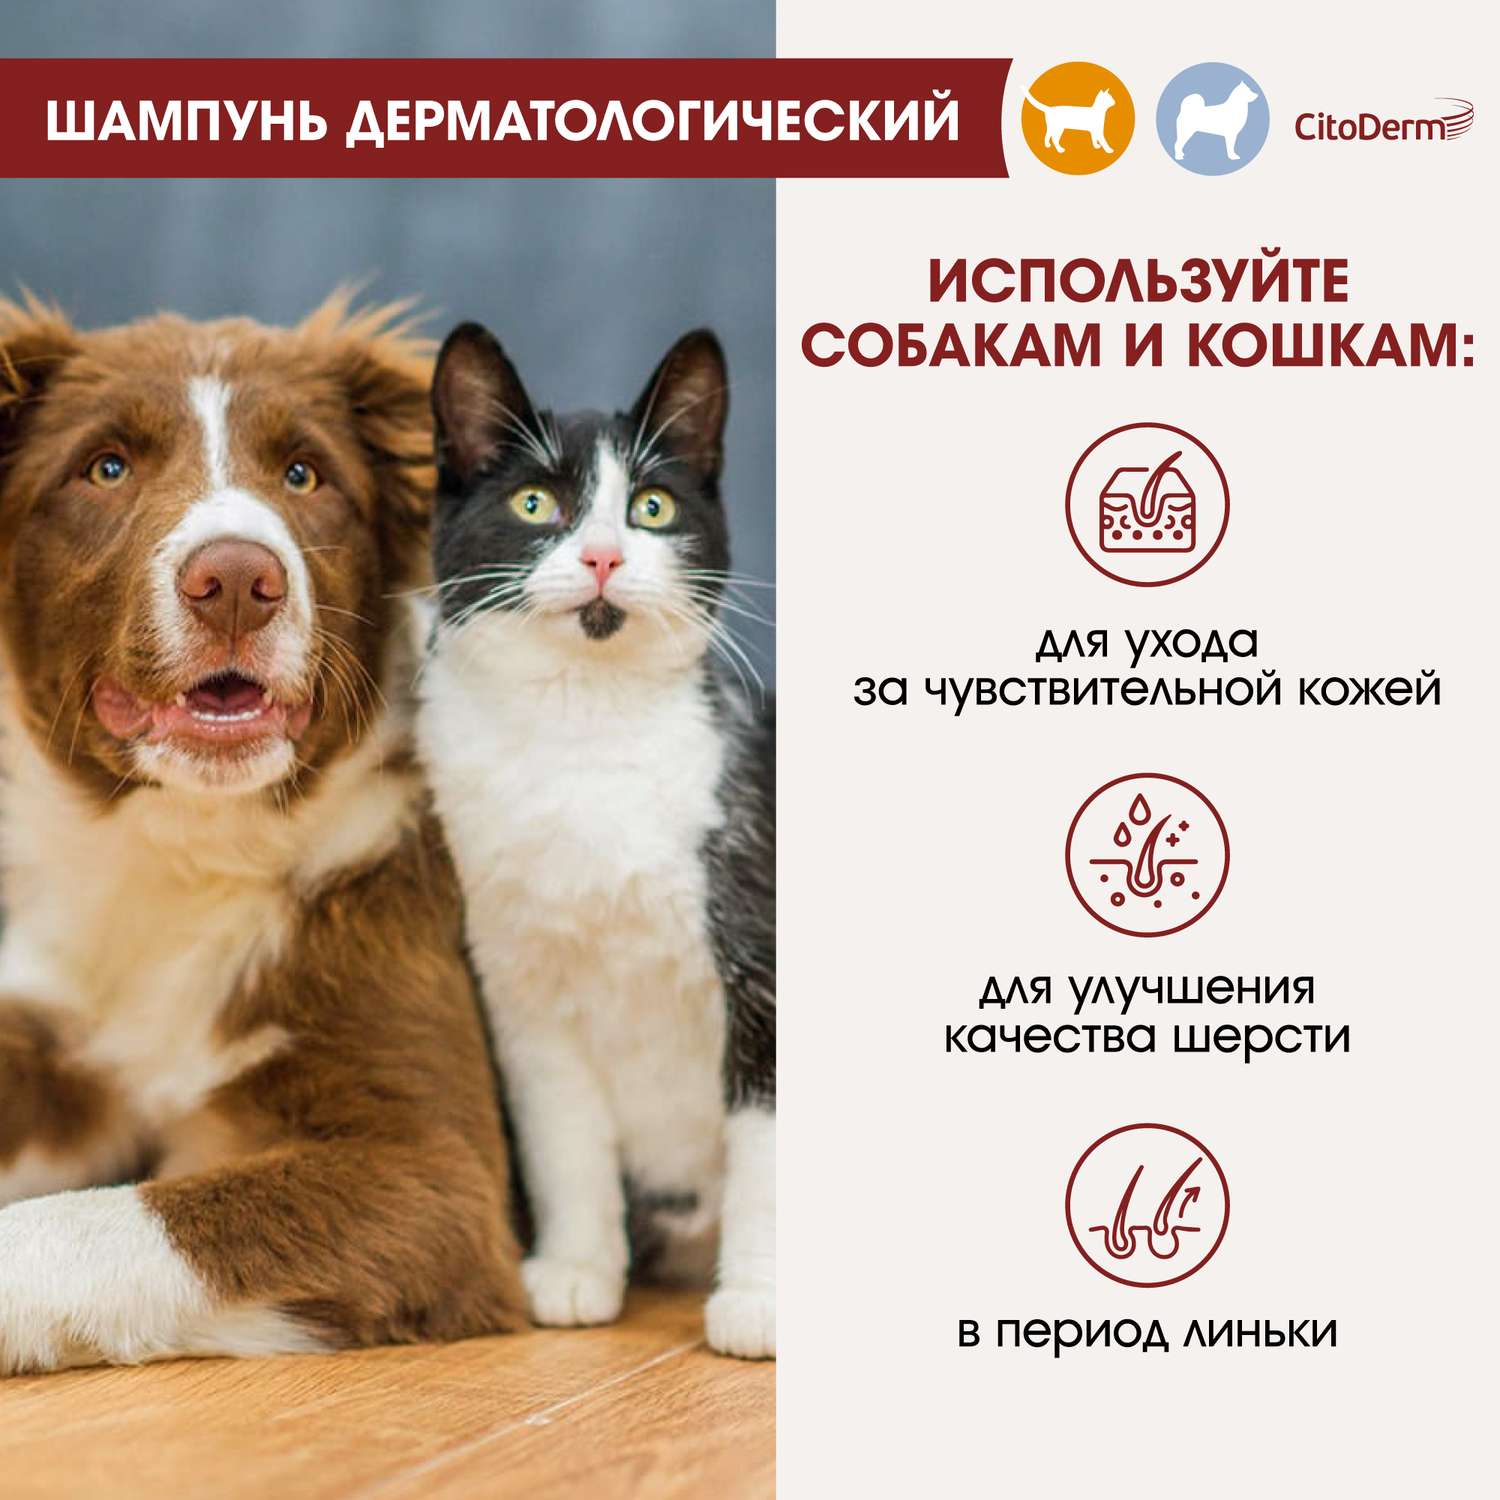 Шампунь для кошек и собак CitoDerm дерматологический 200мл - фото 4